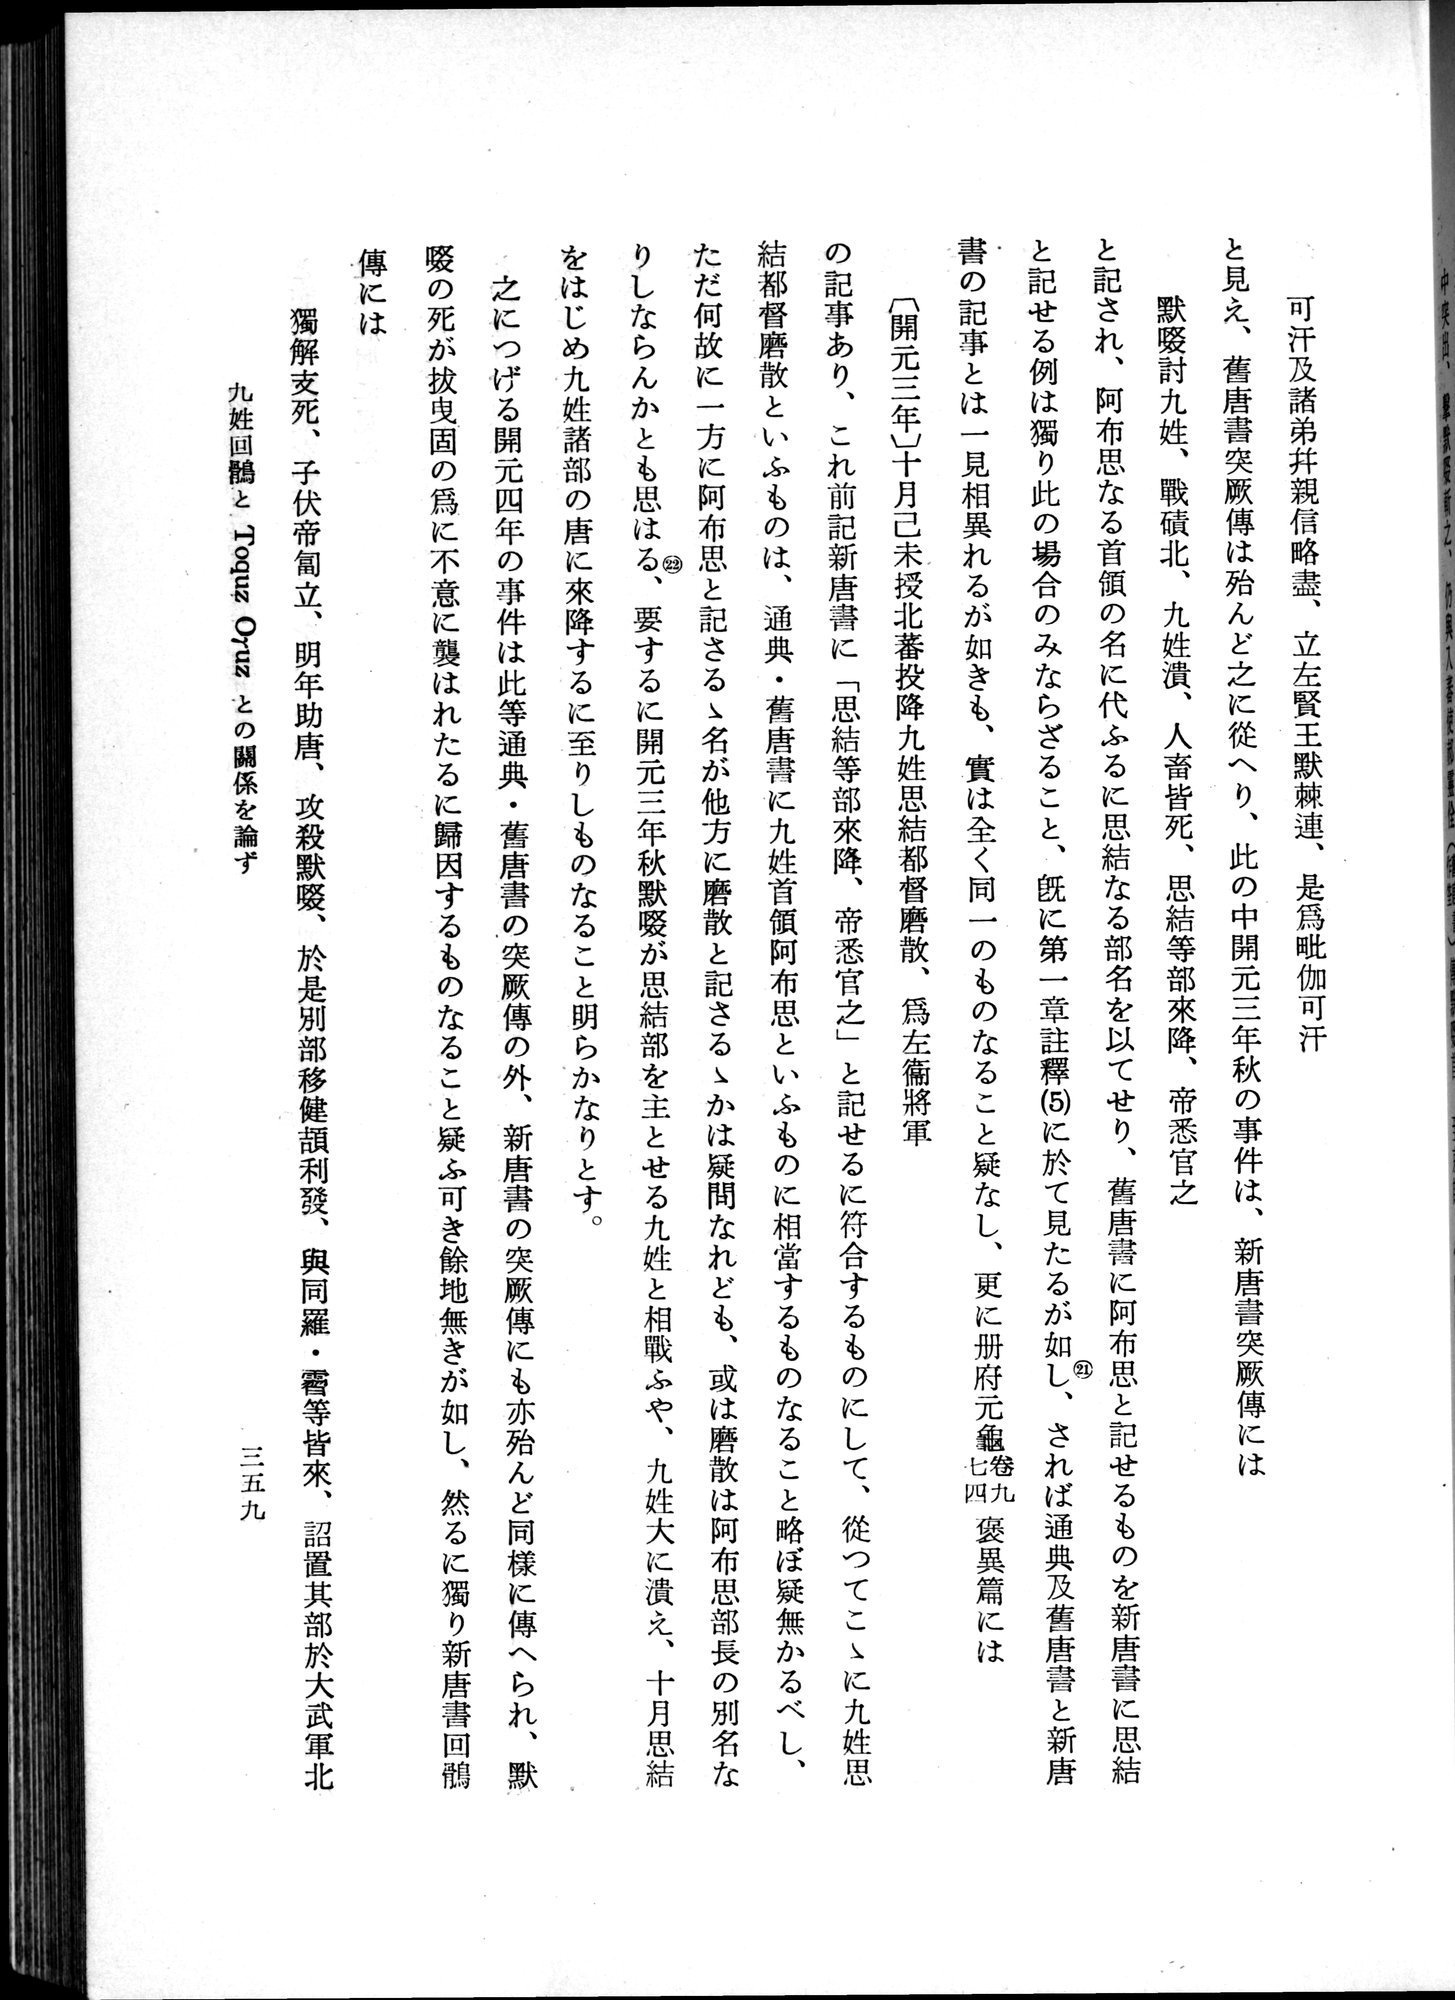 羽田博士史学論文集 : vol.1 / Page 397 (Grayscale High Resolution Image)